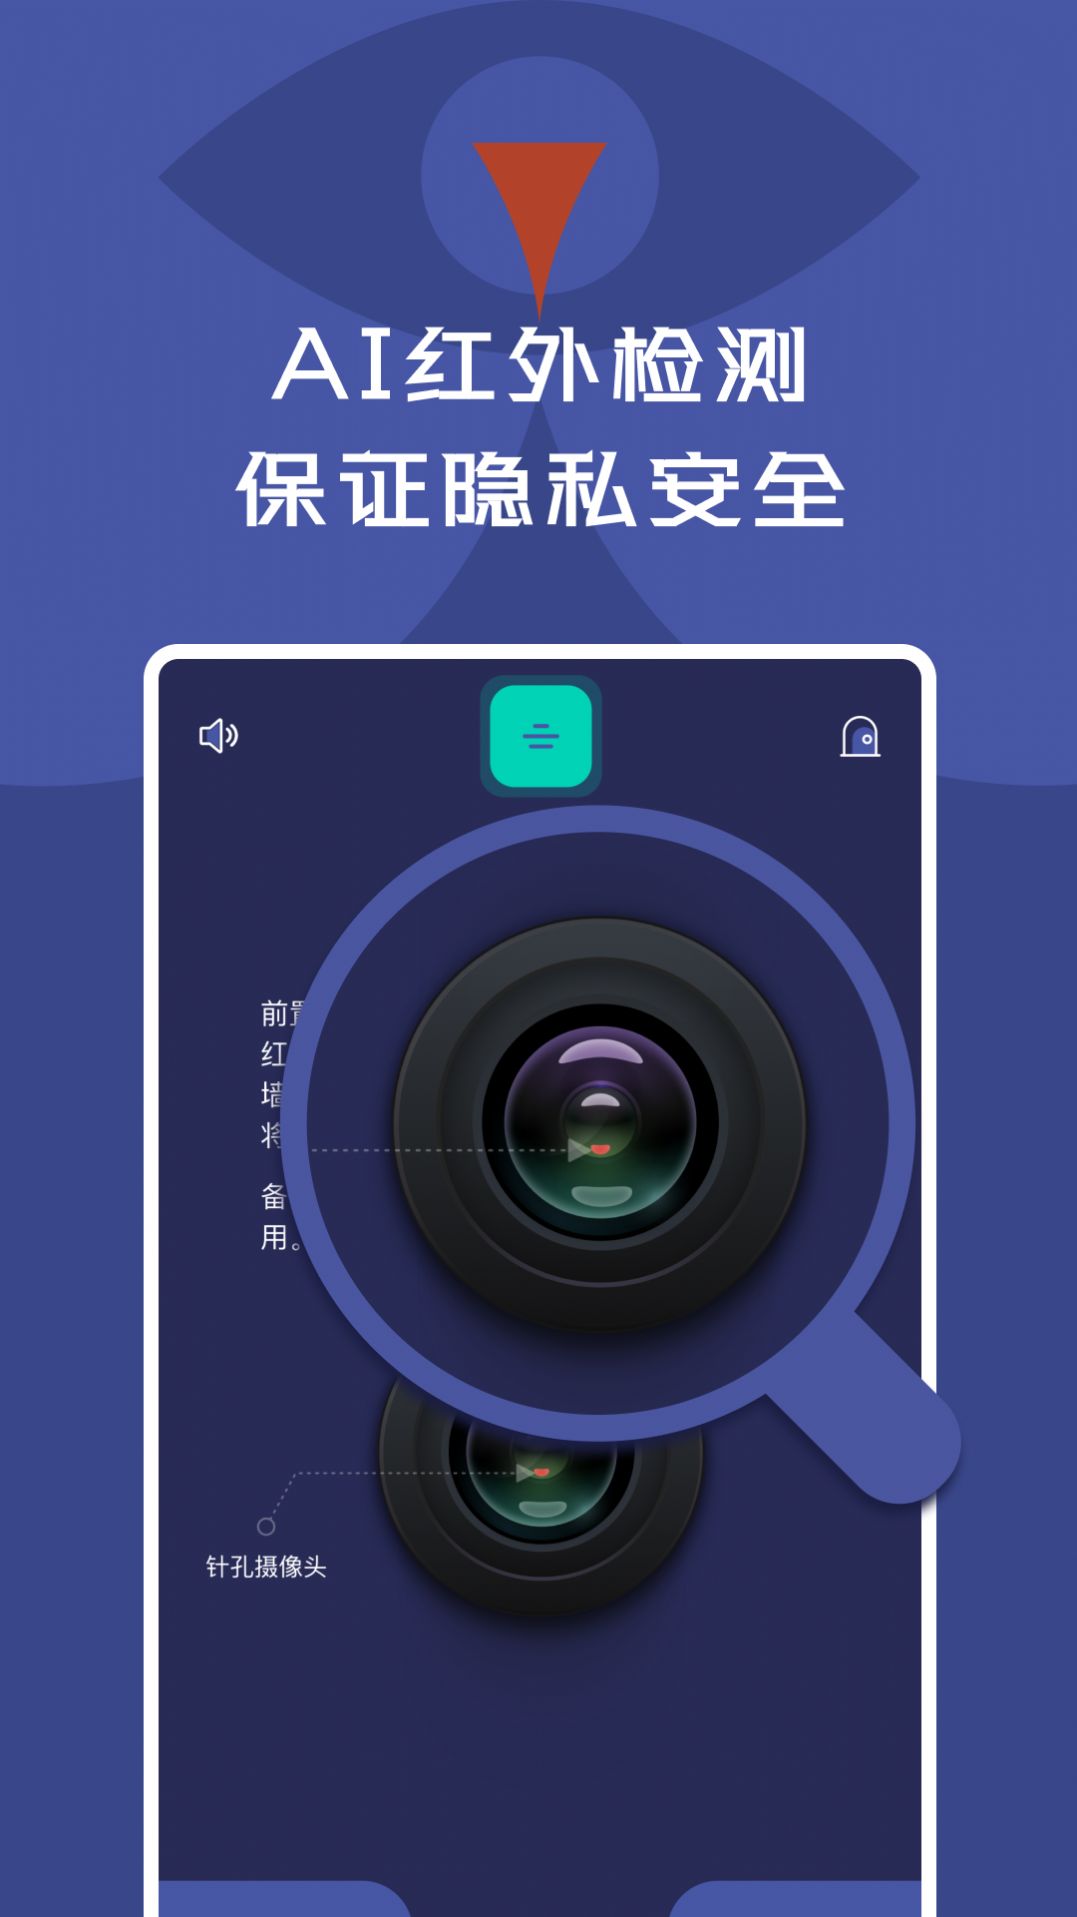 酒店针孔摄像头探测检测器APP免费版图片1